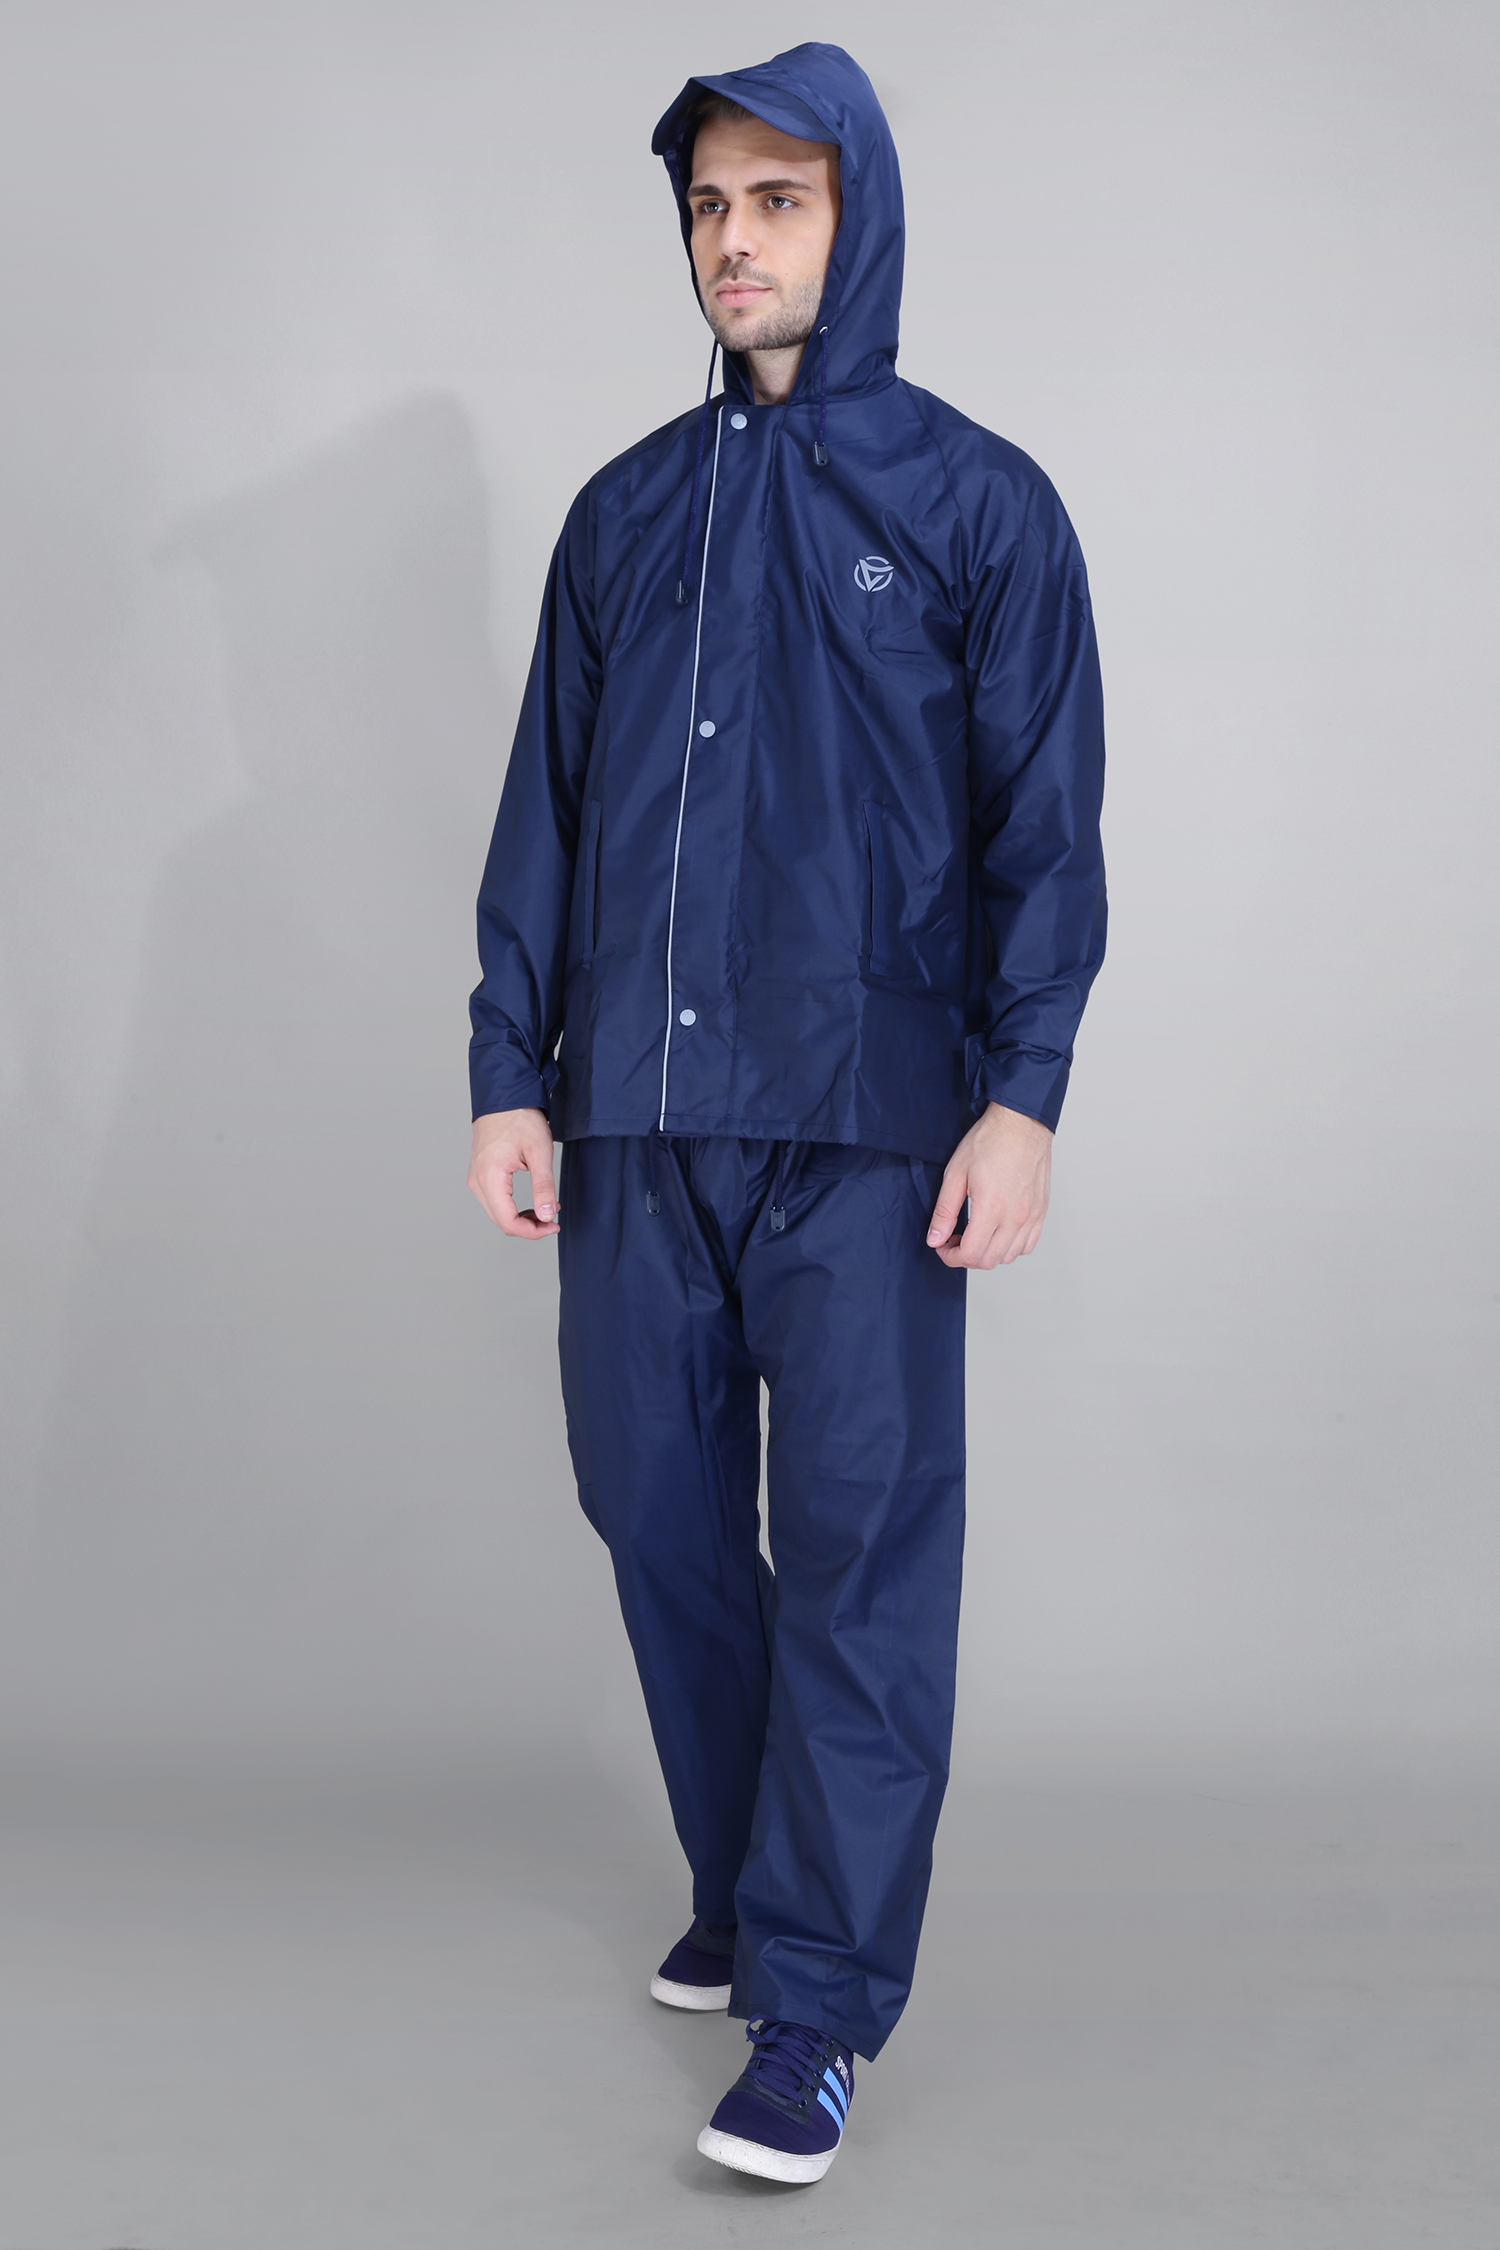 Reversible Double-Layered Rain Suit for Men - 1160 - Blue, XL